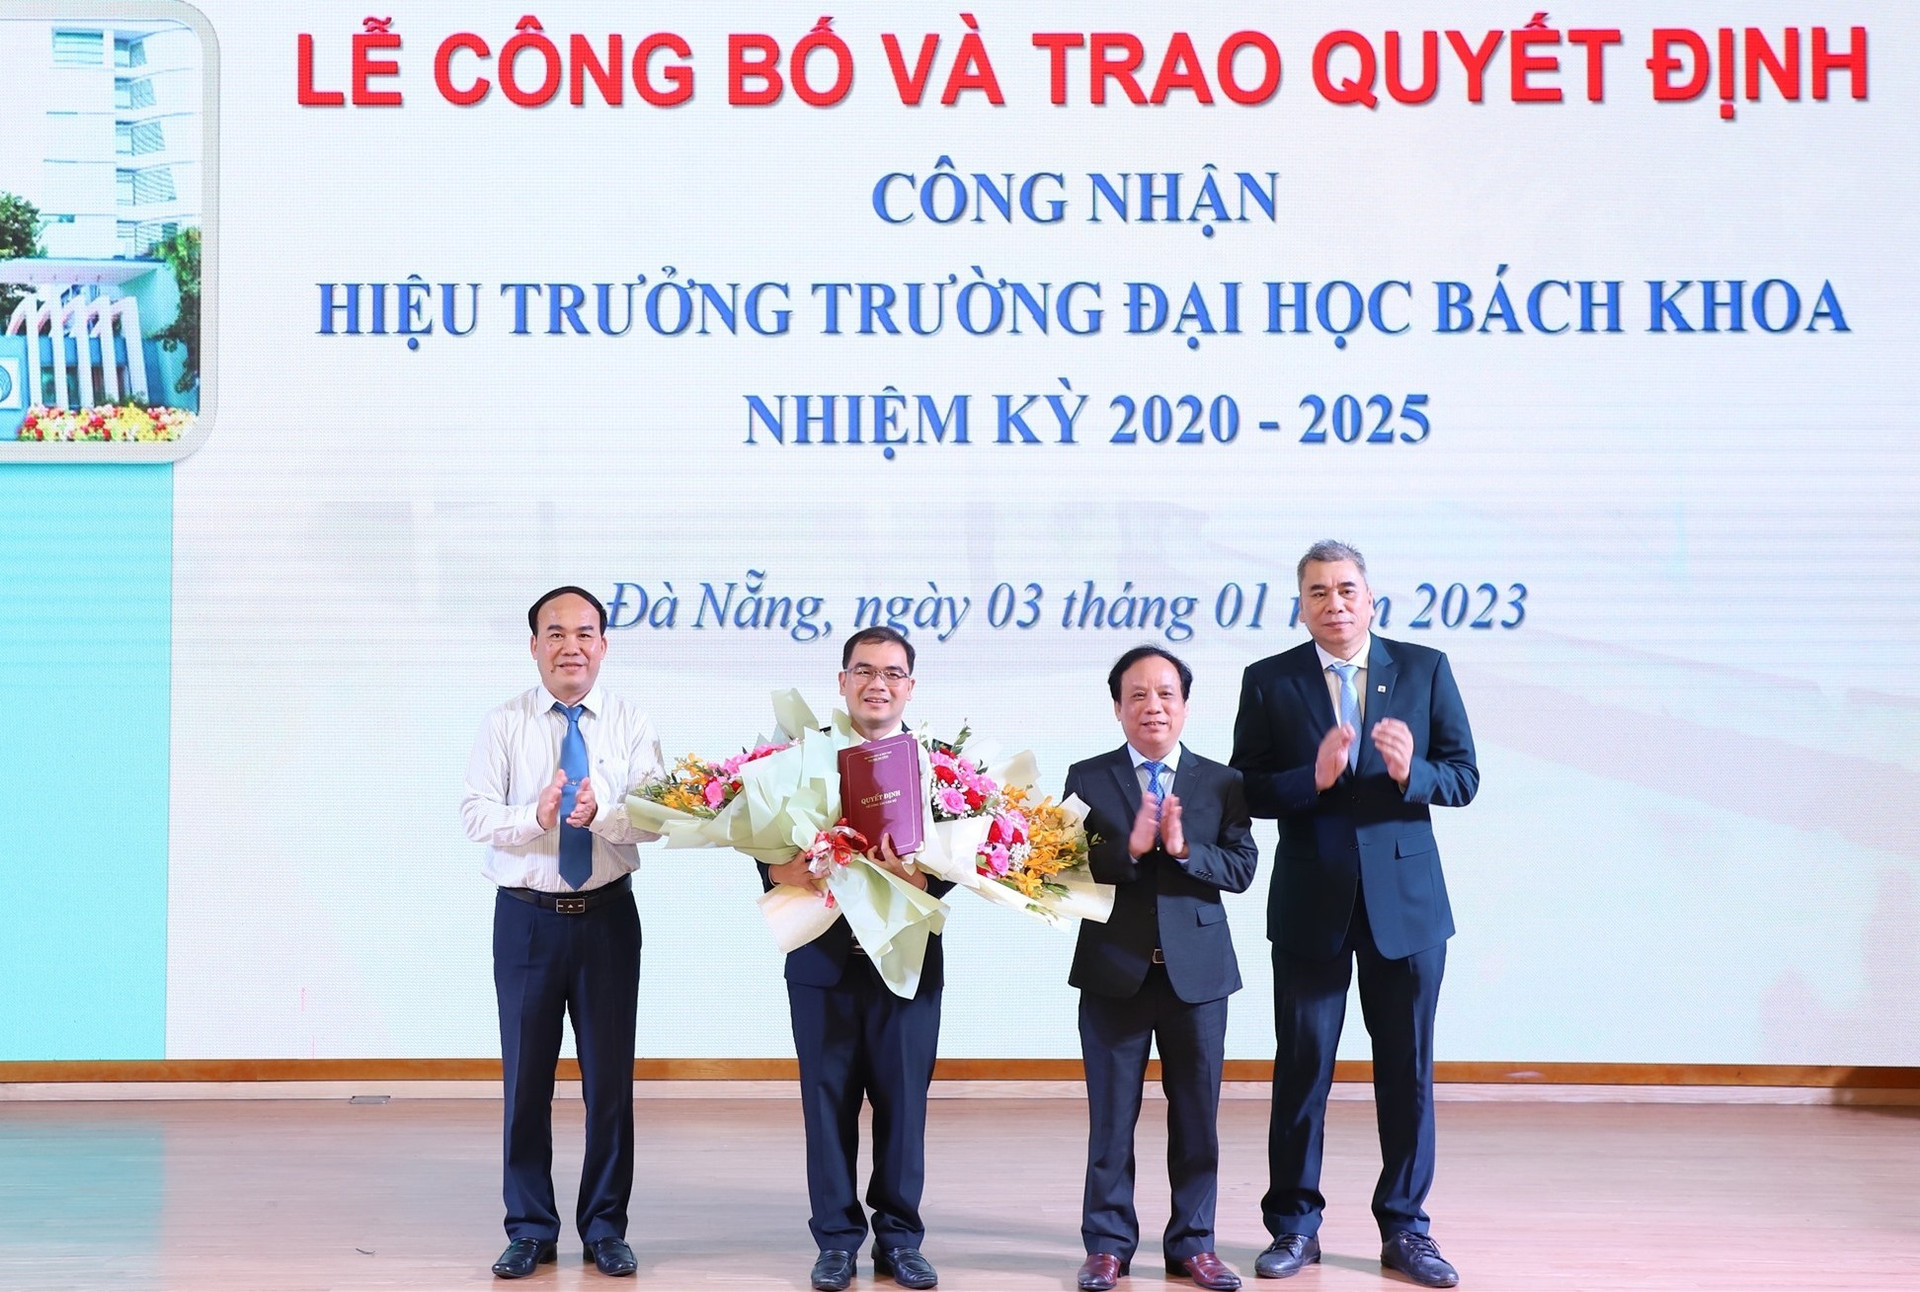 Lãnh đạo Đại học Đà Nẵng trao quyết định và tặng hoa cho tân hiệu trưởng Trường ĐH bách khoa Nguyễn Hữu Hiếu. Ảnh QL